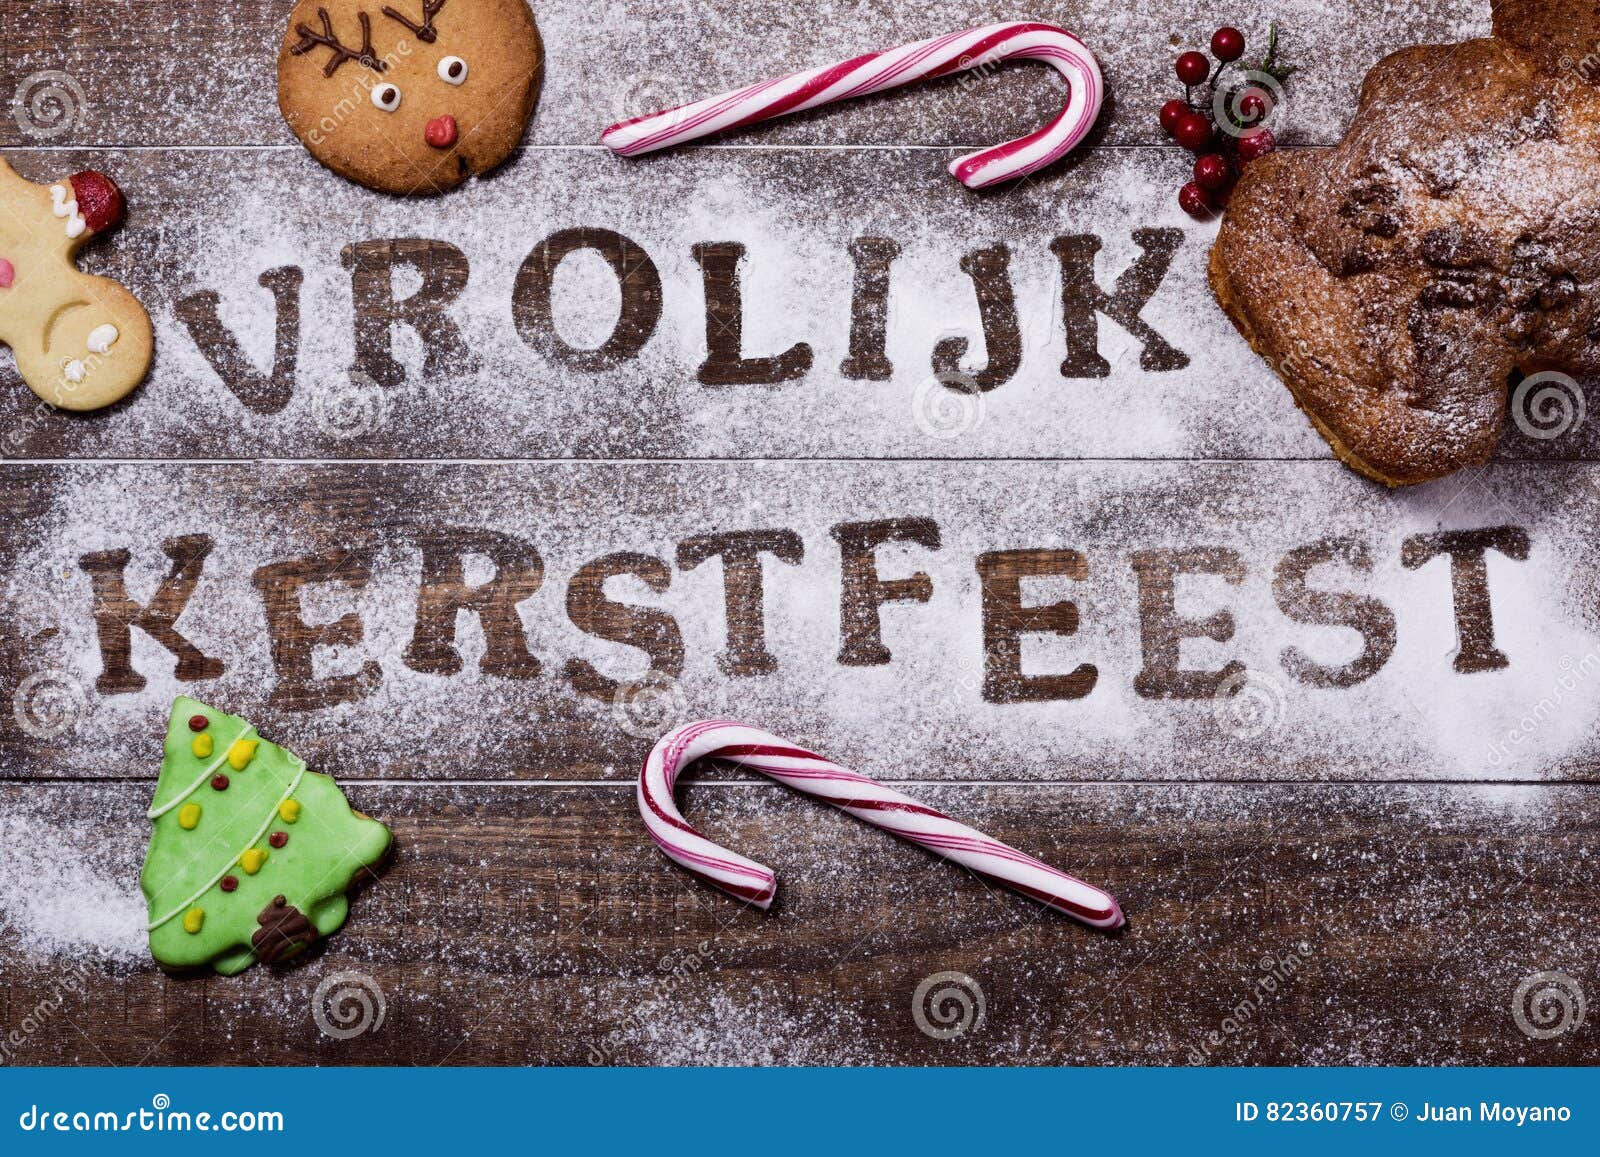 Buon Natale Olandese.Vrolijk Piu Kerstfeest Buon Natale Del Testo In Olandese Immagine Stock Immagine Di Celebrazione Alimento 82360757